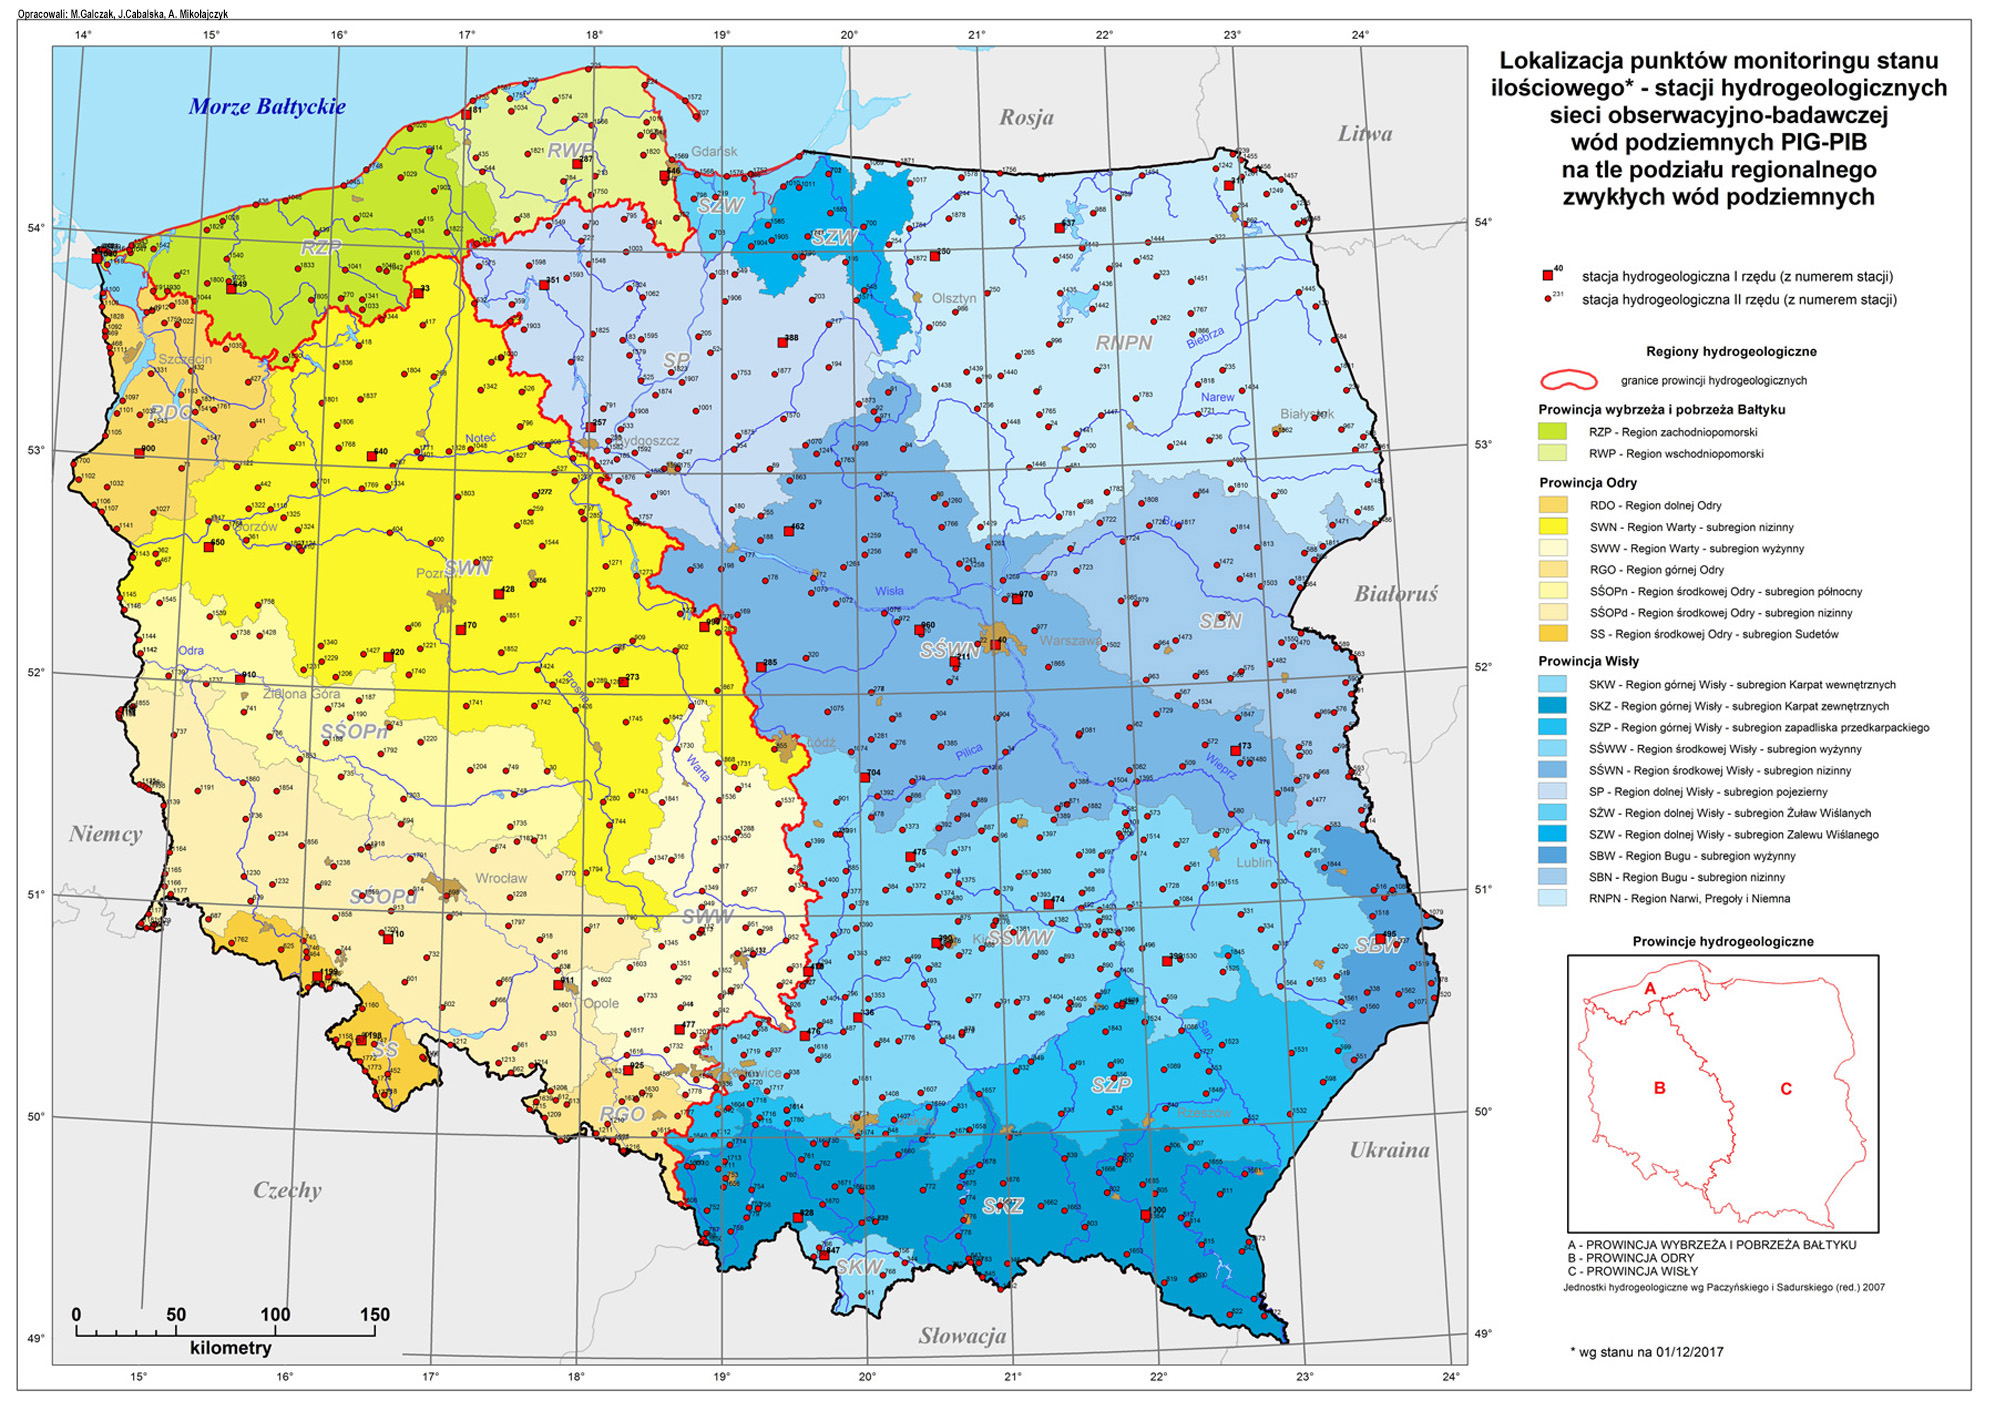 Lokalizacja punktów monitoringu stanu ilościowego – stacji hydrogeologicznych sieci obserwacyjno-badawczej wód podziemnych PIG-PIB na tle podziału regionalnego zwykłych wód podziemnych.